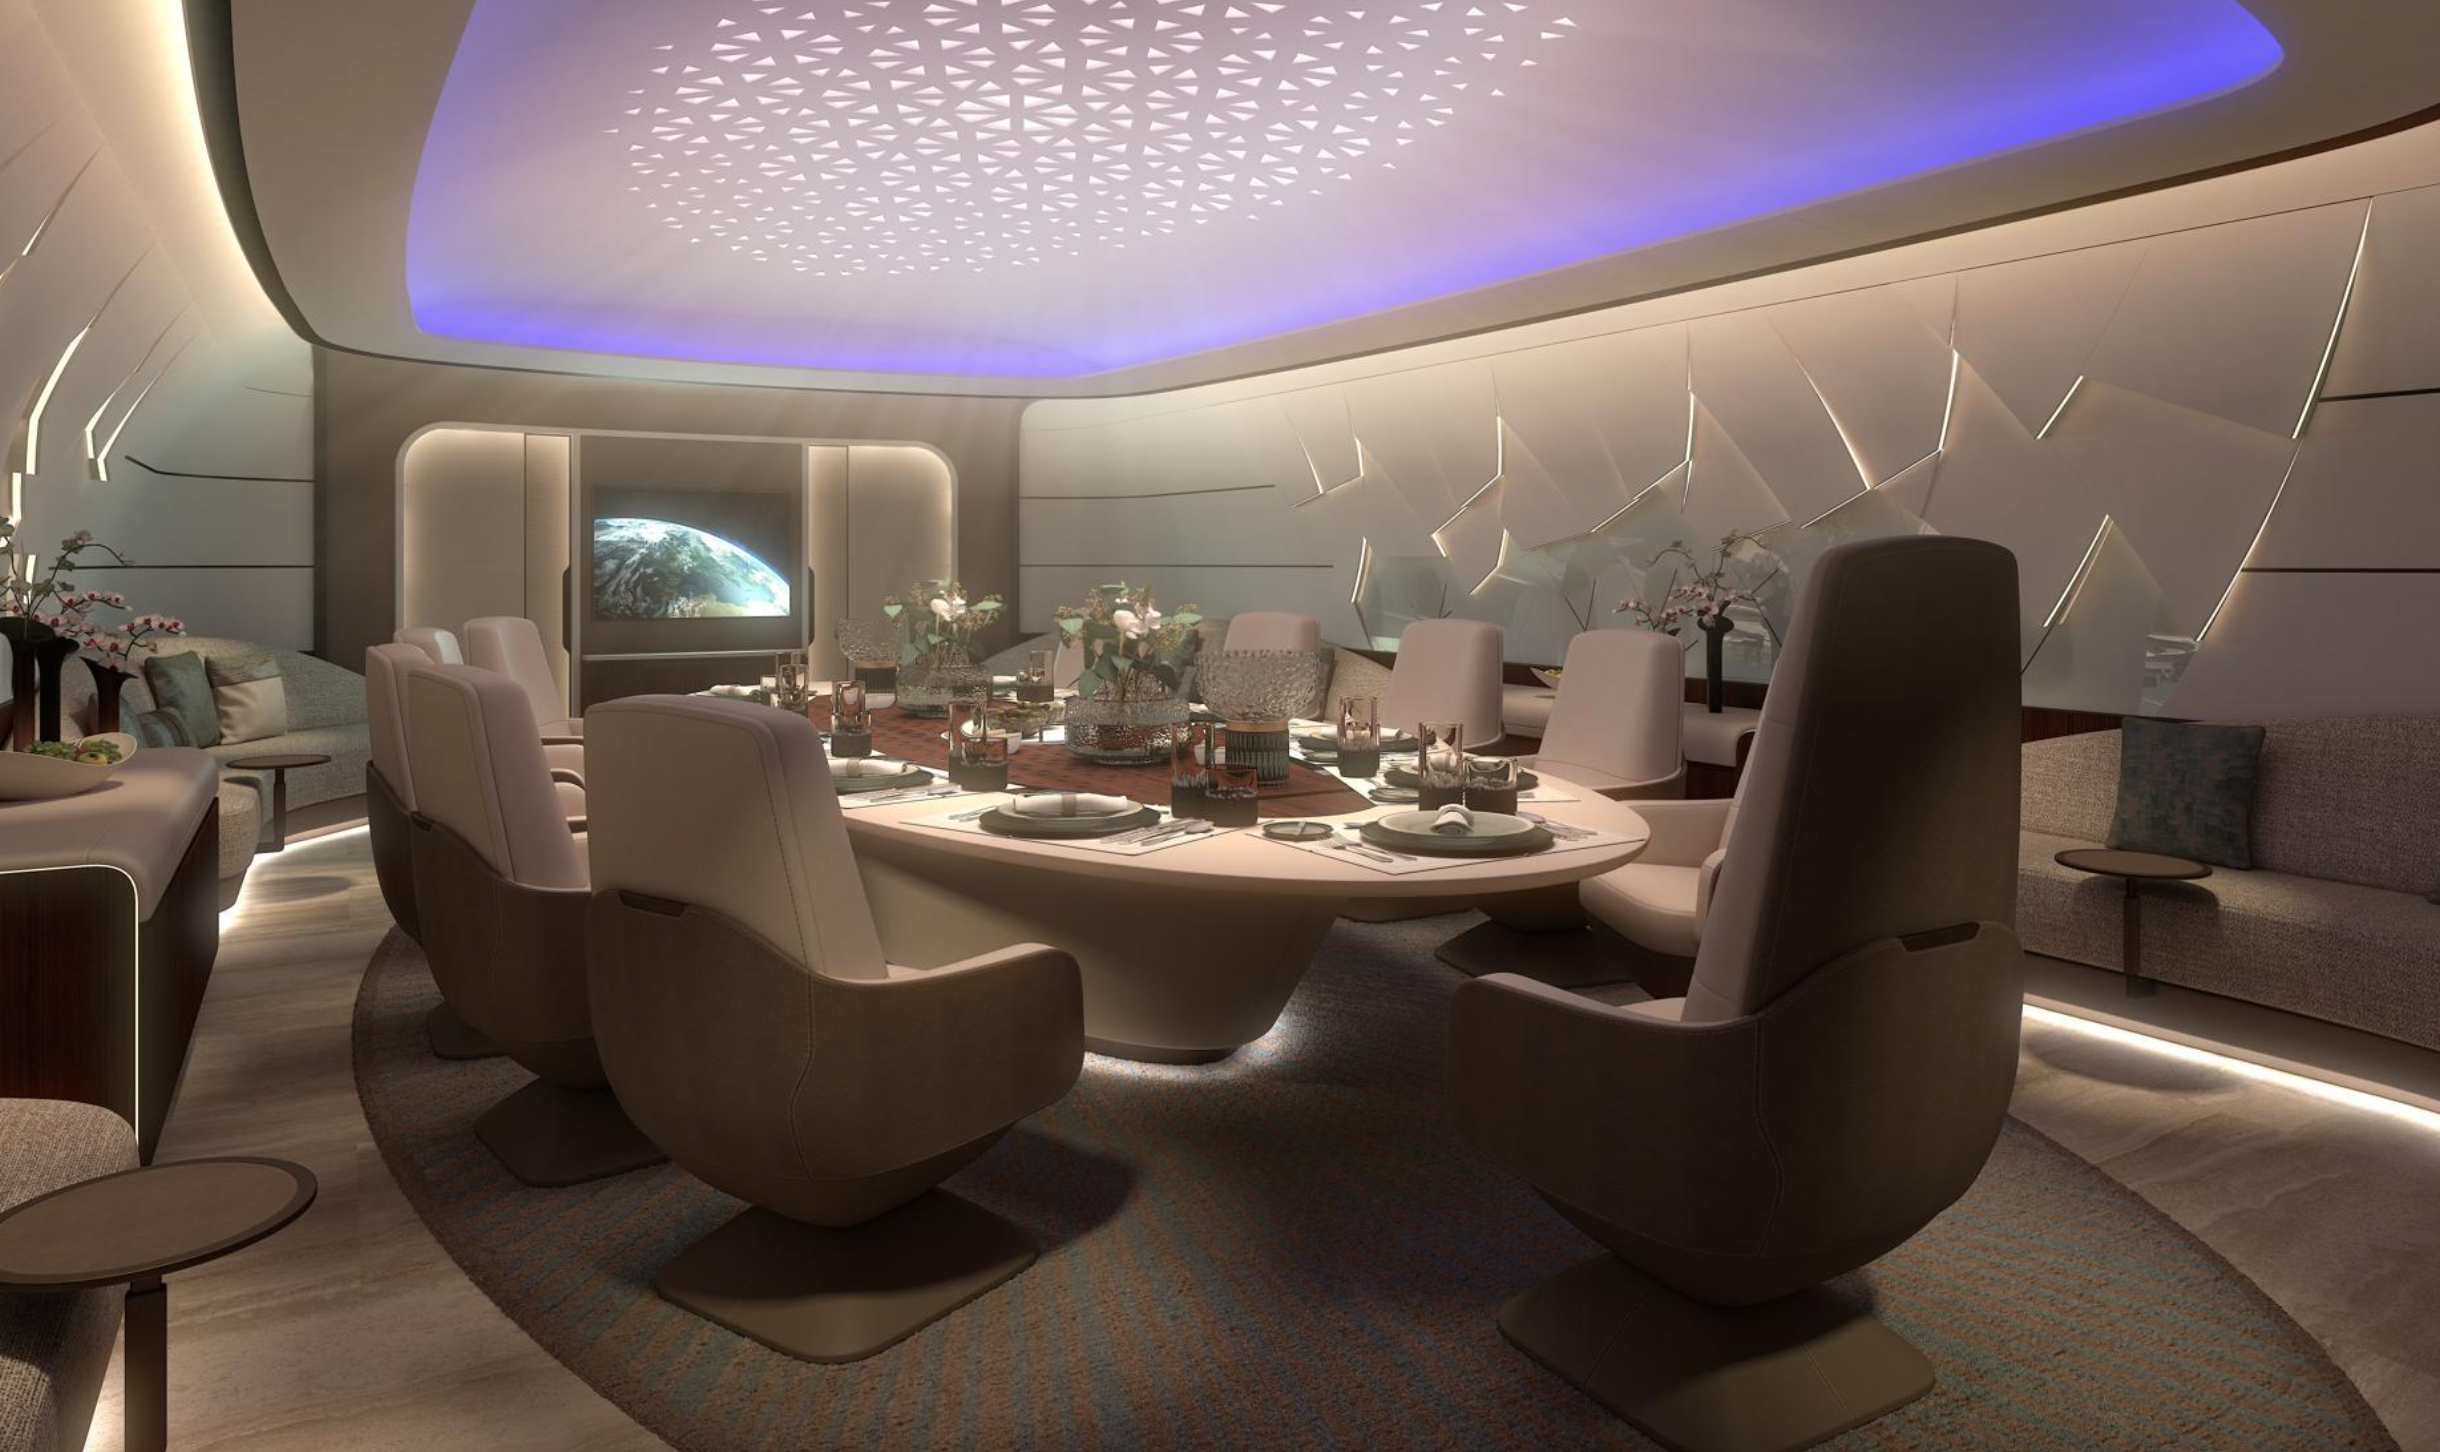 Schickes Speisen in der VIP-Boeing: Vor allem Superreiche aus dem Nahen Osten sollen sich von dem Design angesprochen fühlen.